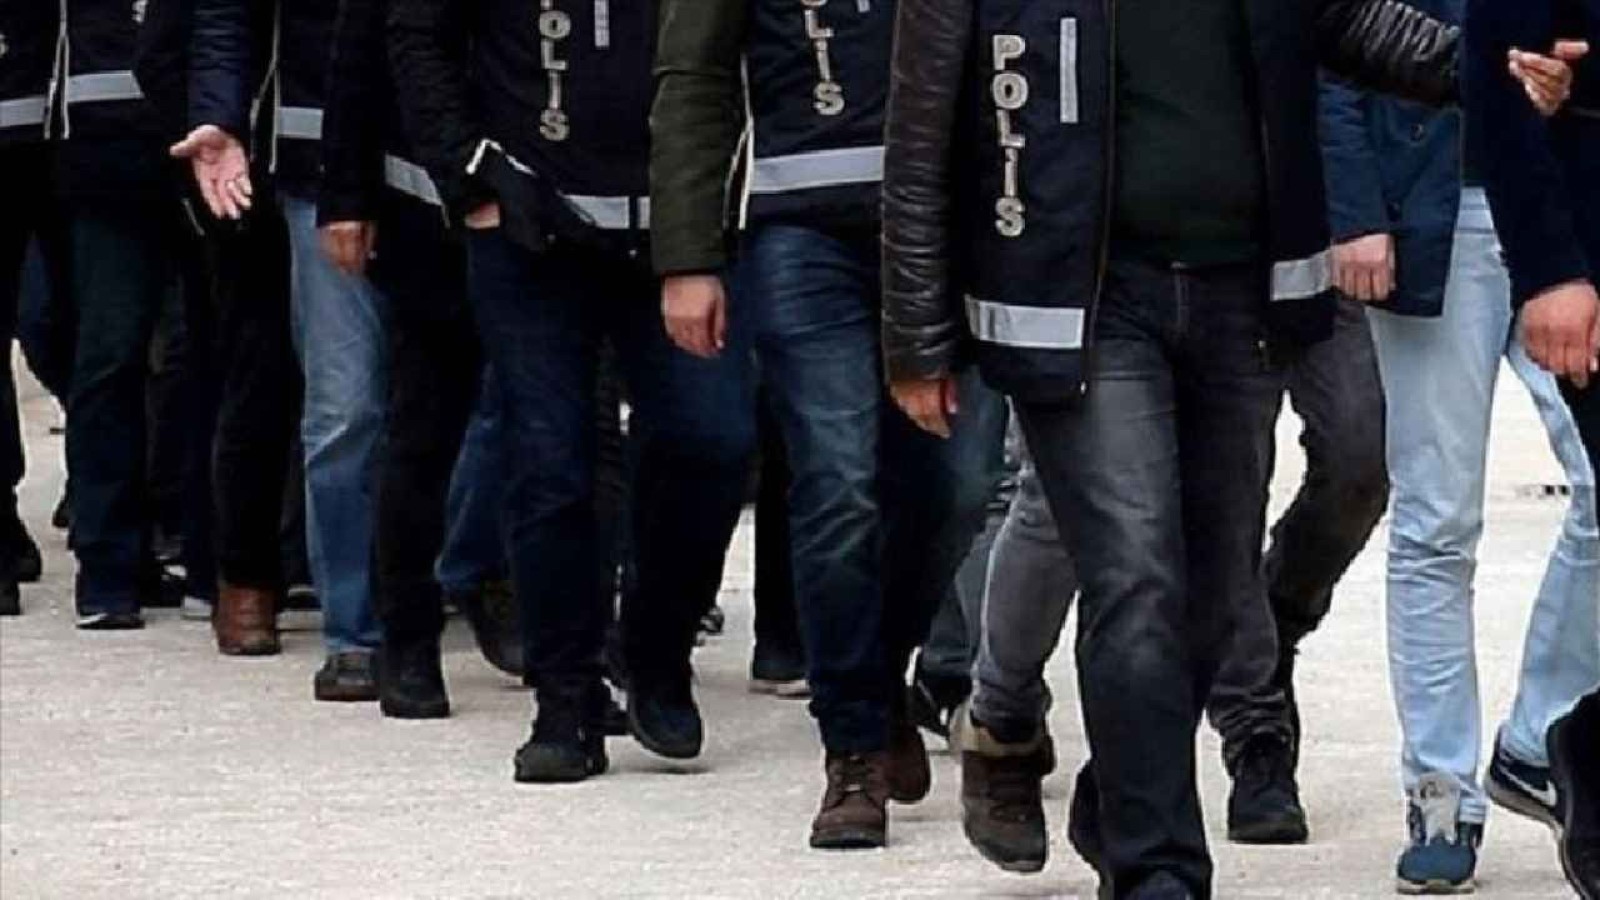 Şanlıurfa’nın bir haftalık bilançosu açıklandı: 250 gözaltı!